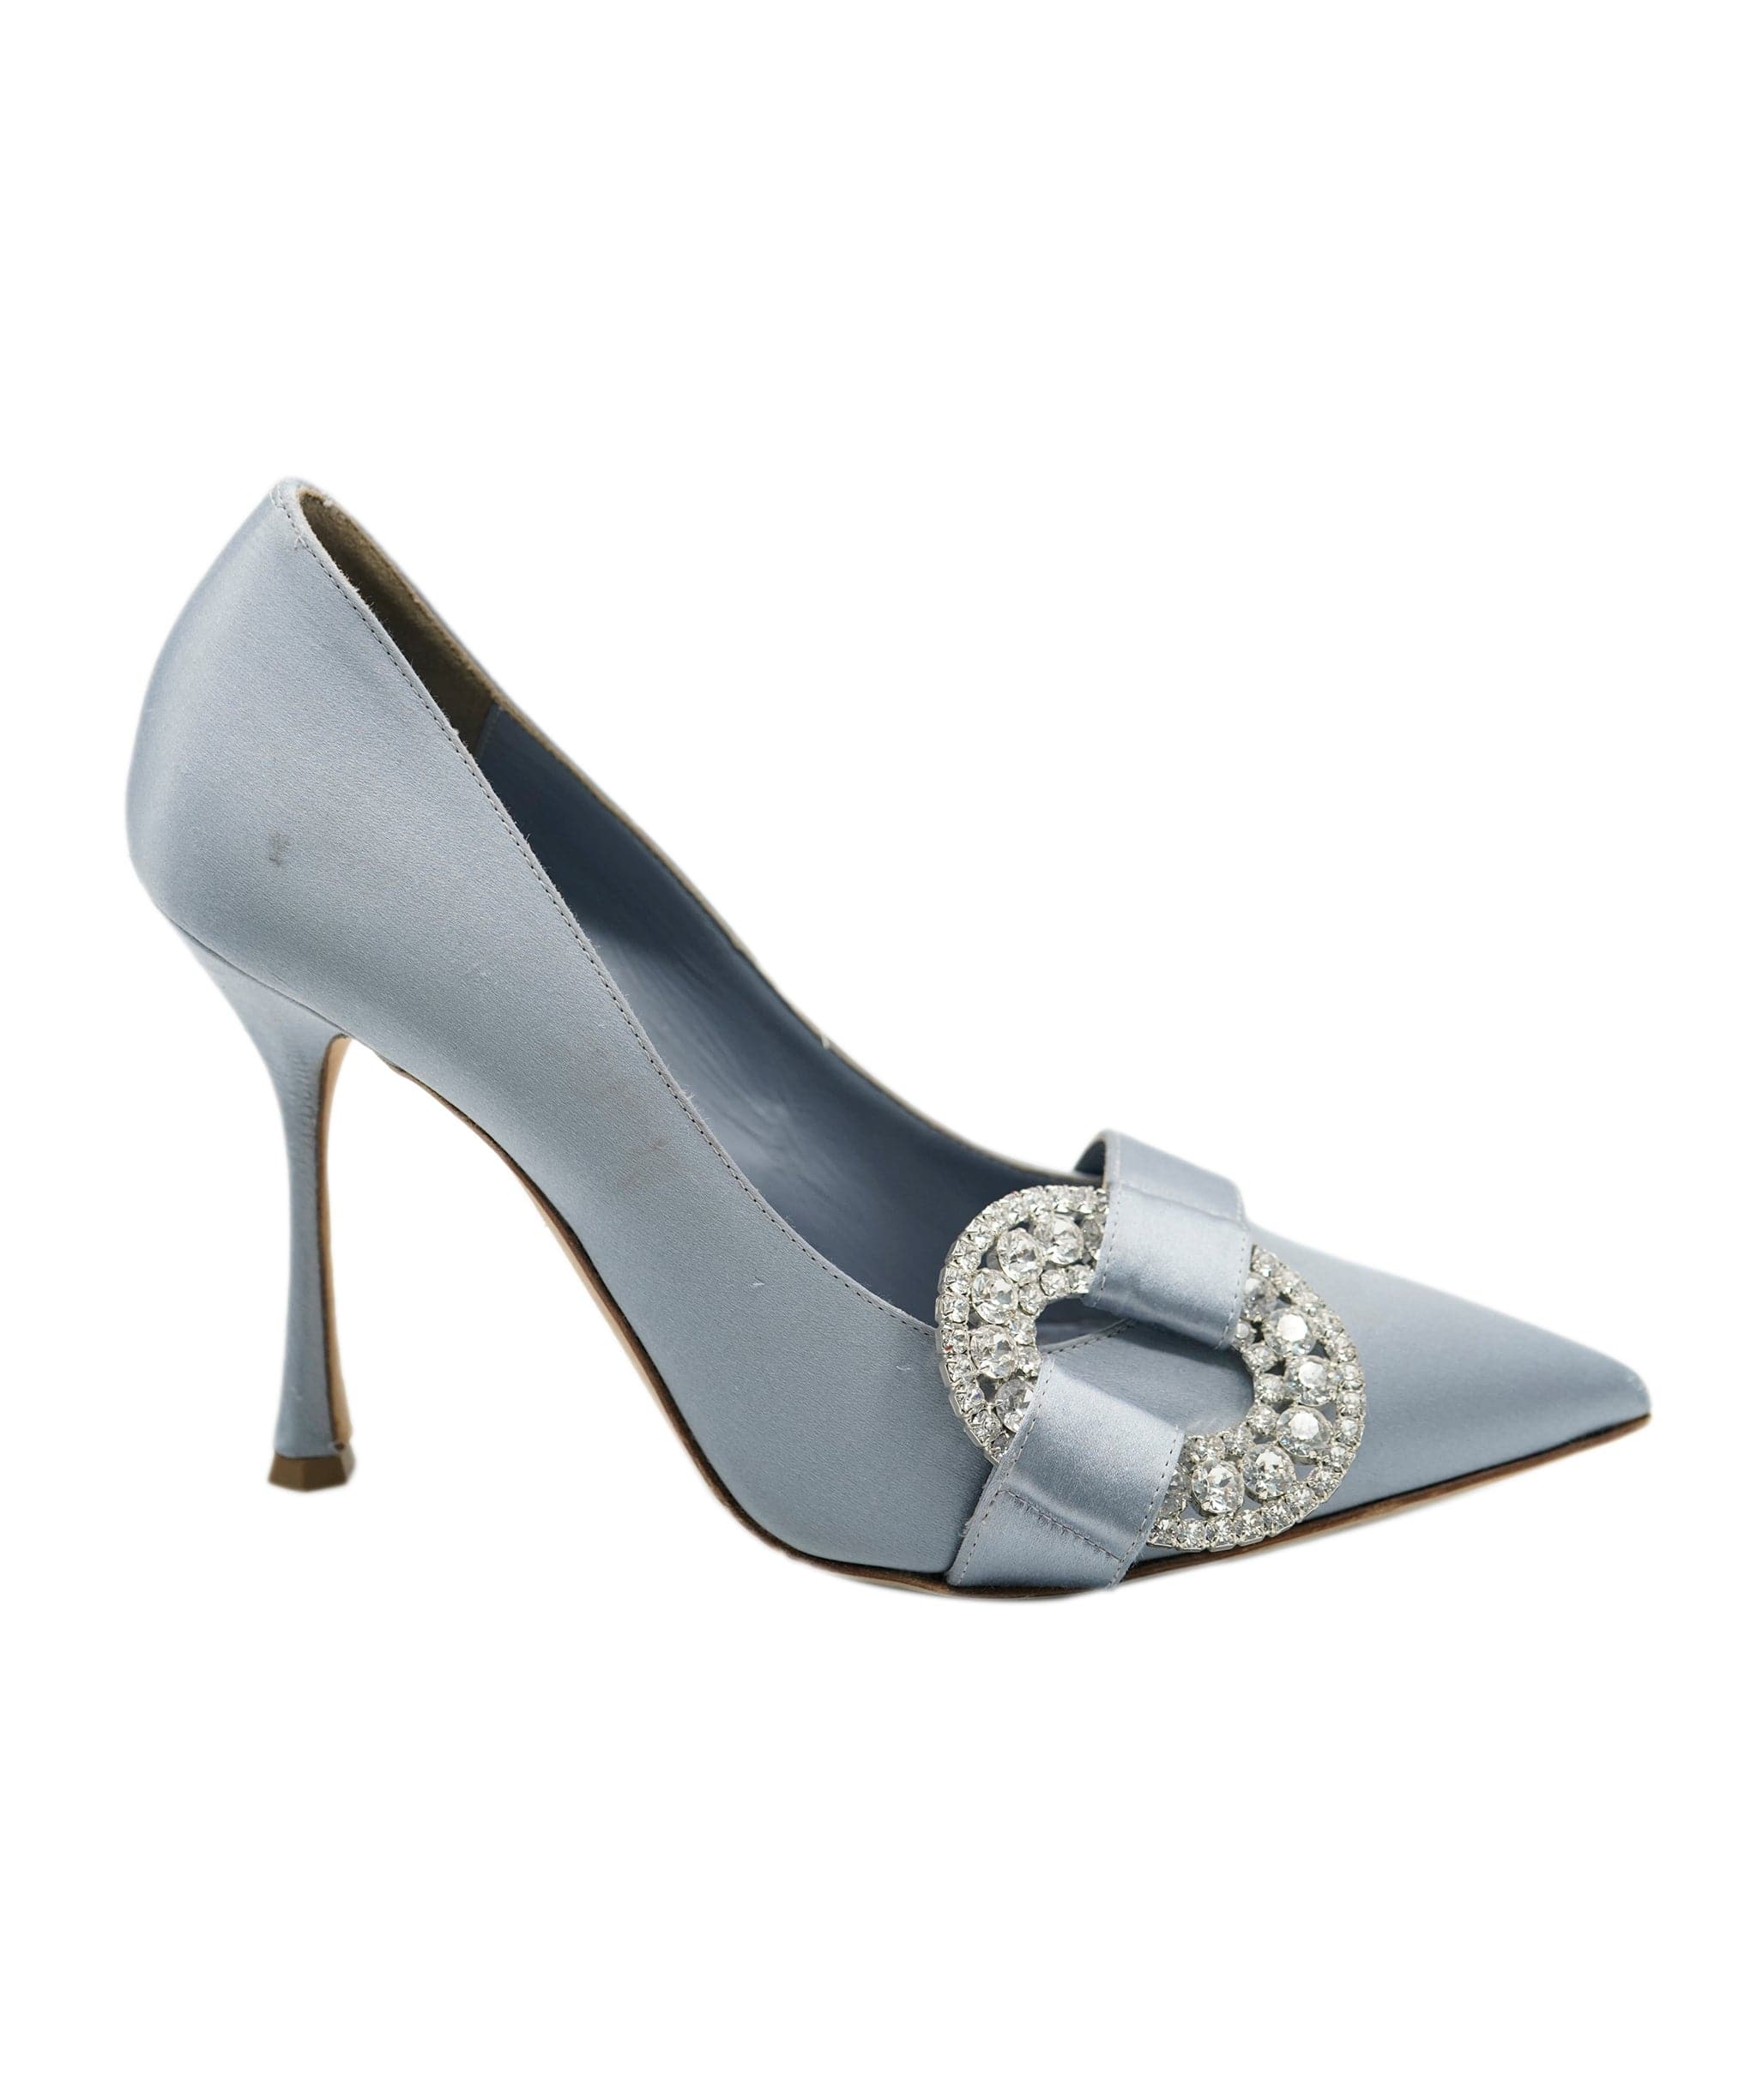 Manolo Blahnik manolo blahnik light blue heels  AVC1739